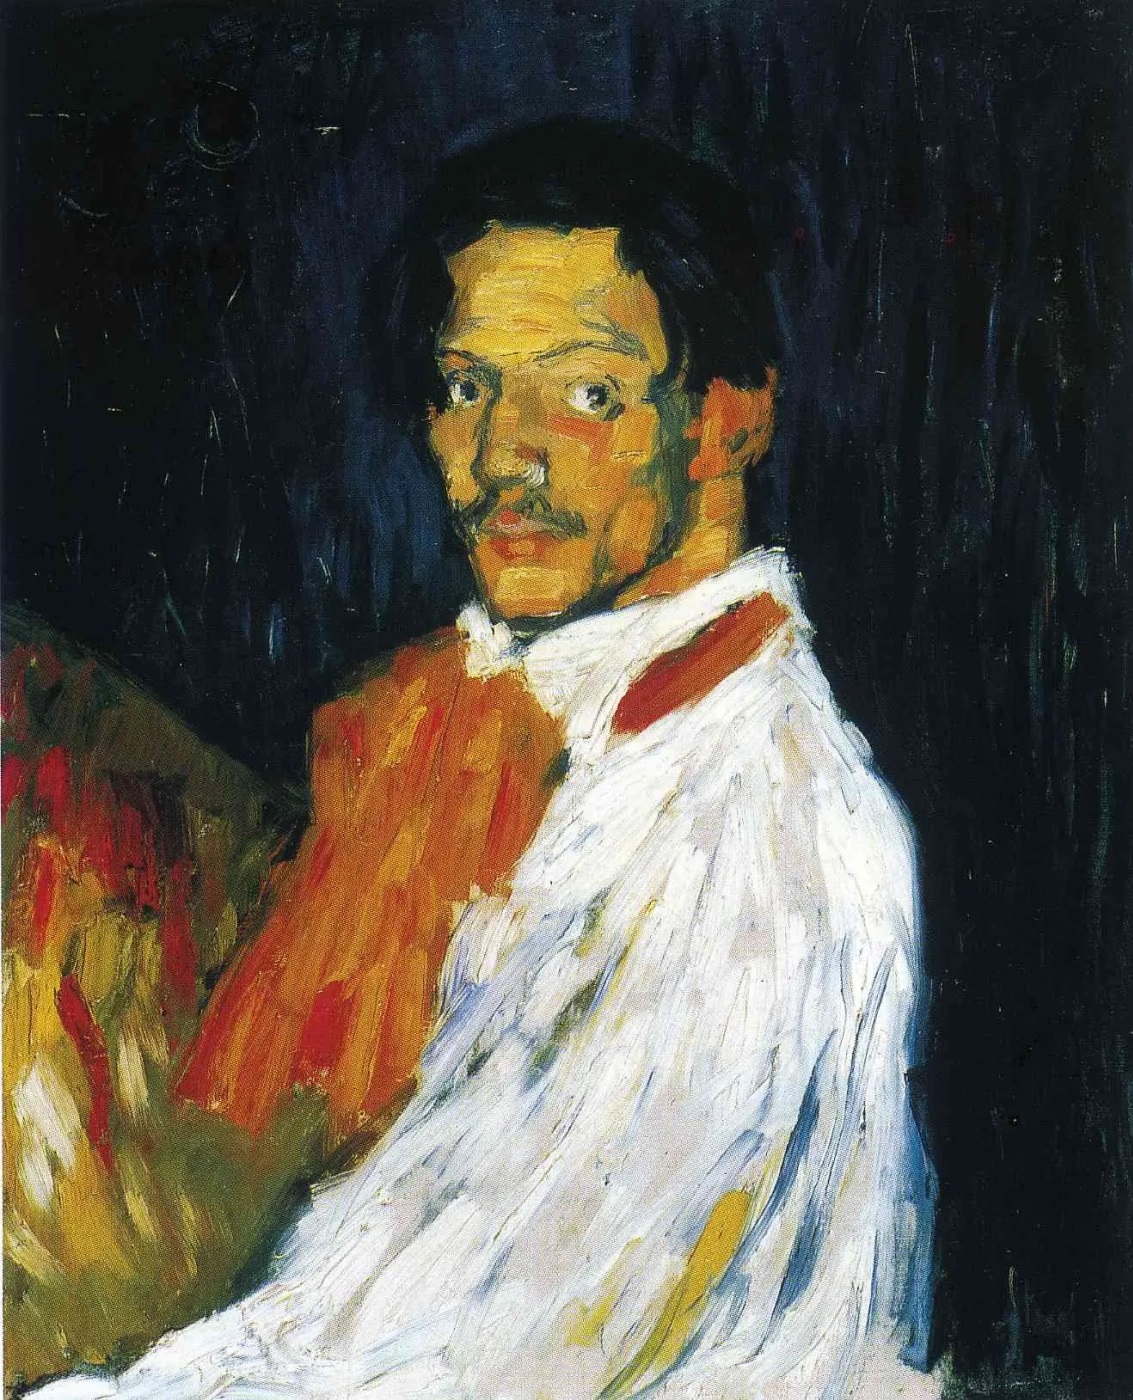 Пабло Пикассо. "Автопортрет (Портрет мужчины в белой рубашке)". 1901. Частная коллекция.